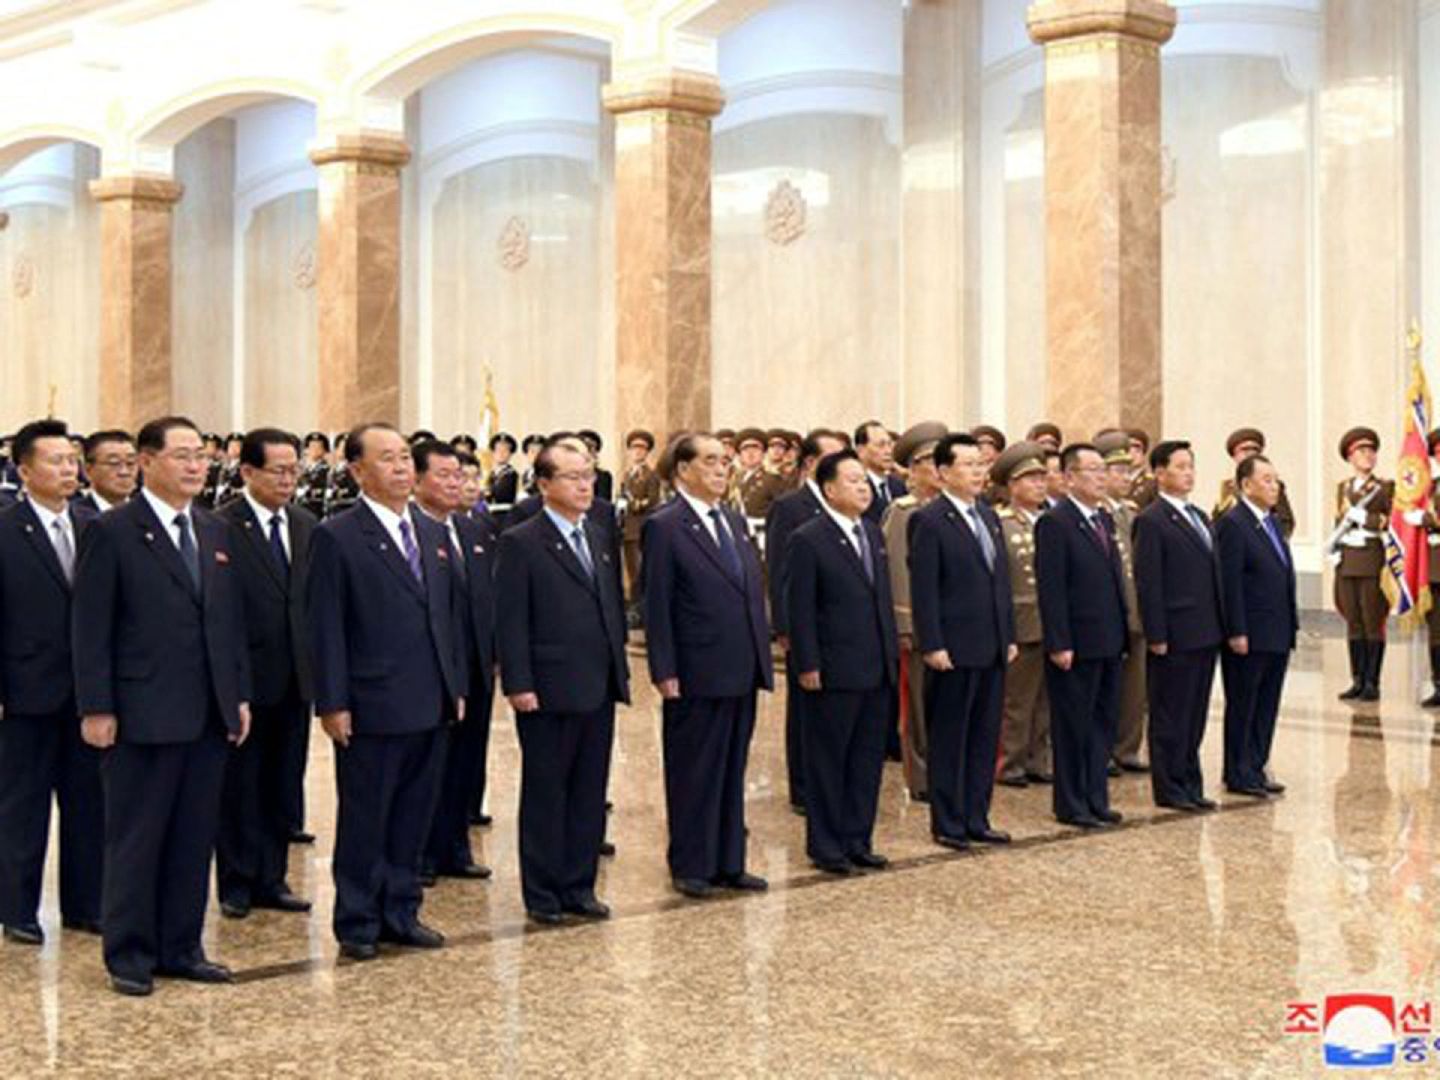 朝中社于4月16日公布朝鲜高级官员参观锦绣山太阳宫纪念朝鲜前最高领导人金日成诞辰108周年的现场照片，其中也没有金正恩的身影。这是他自2012年上台以来首次缺席该活动。（Reuters）